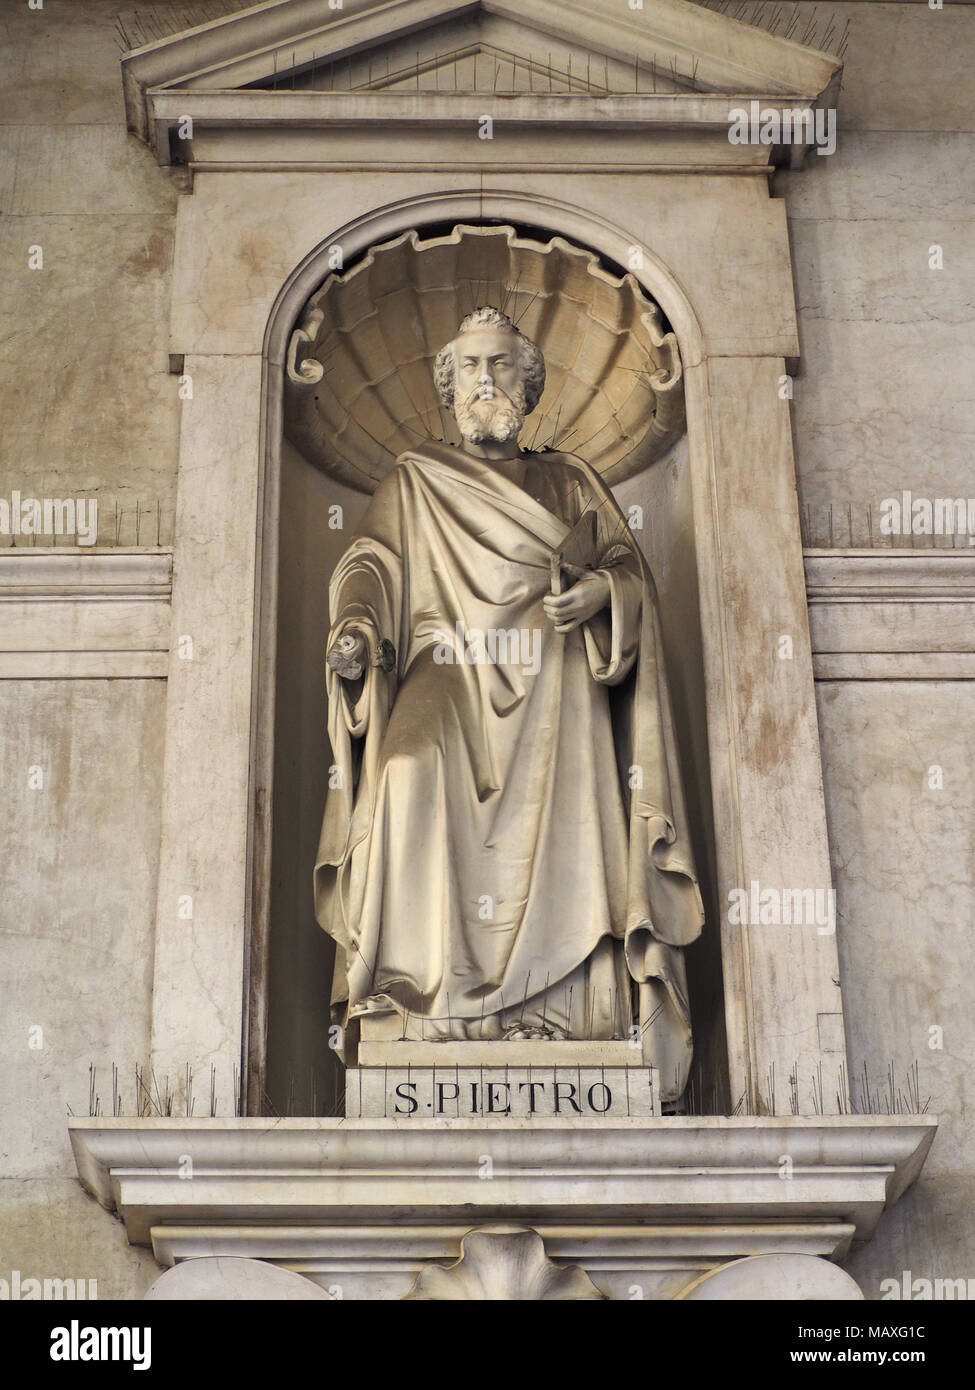 Torino, Italia - circa gennaio 2018: San Pietro statua (San Pietro in italiano) al di fuori della Santissima Annunziata chiesa parrocchiale Foto Stock